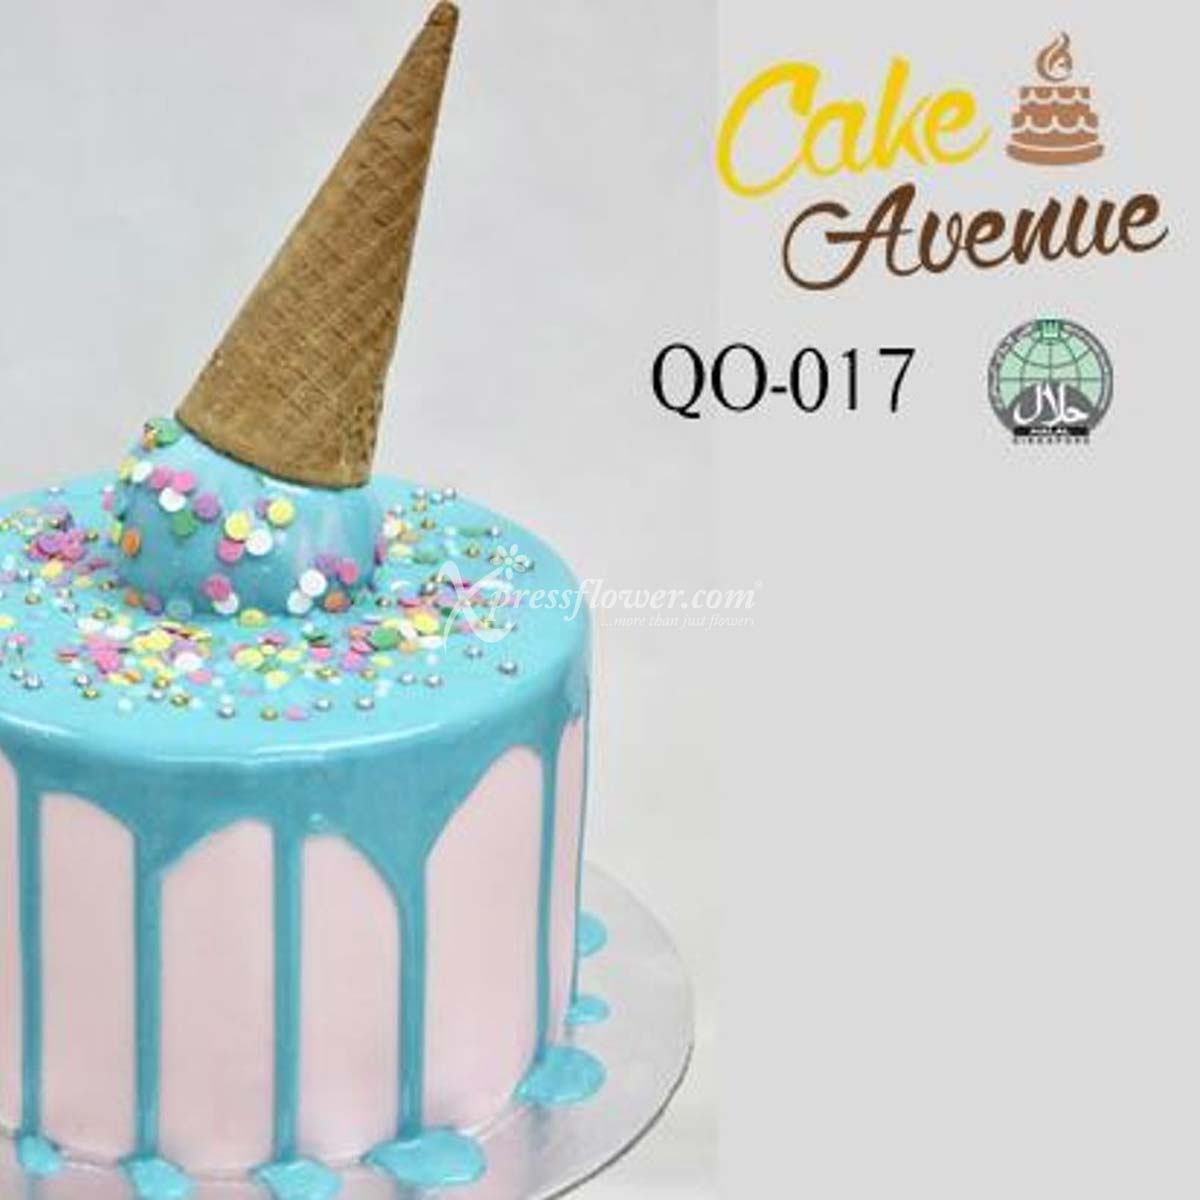 Ice Cream (Cake Avenue)